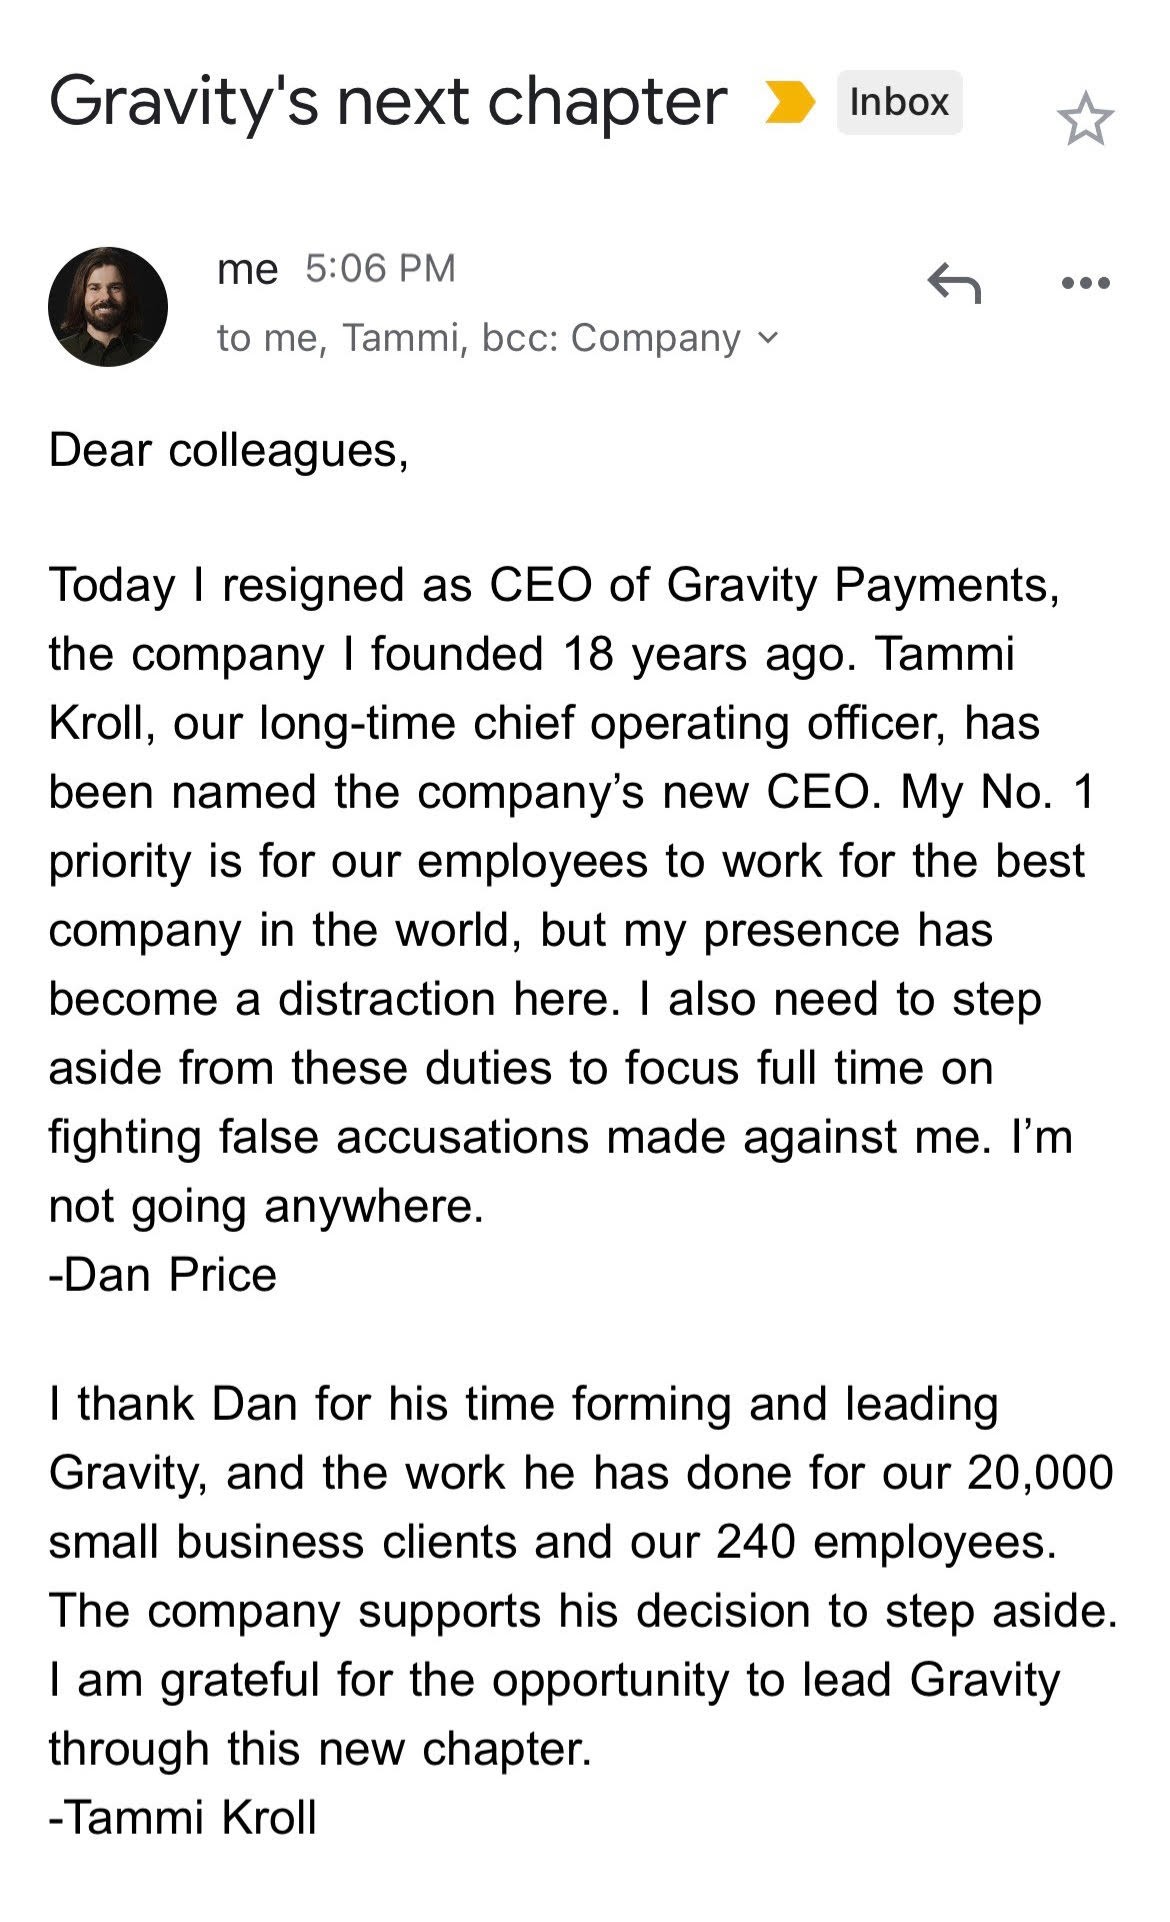 Dan Price publicou o e-mail que enviou para anunciar sua renúncia (Foto: Reprodução/Twitter)